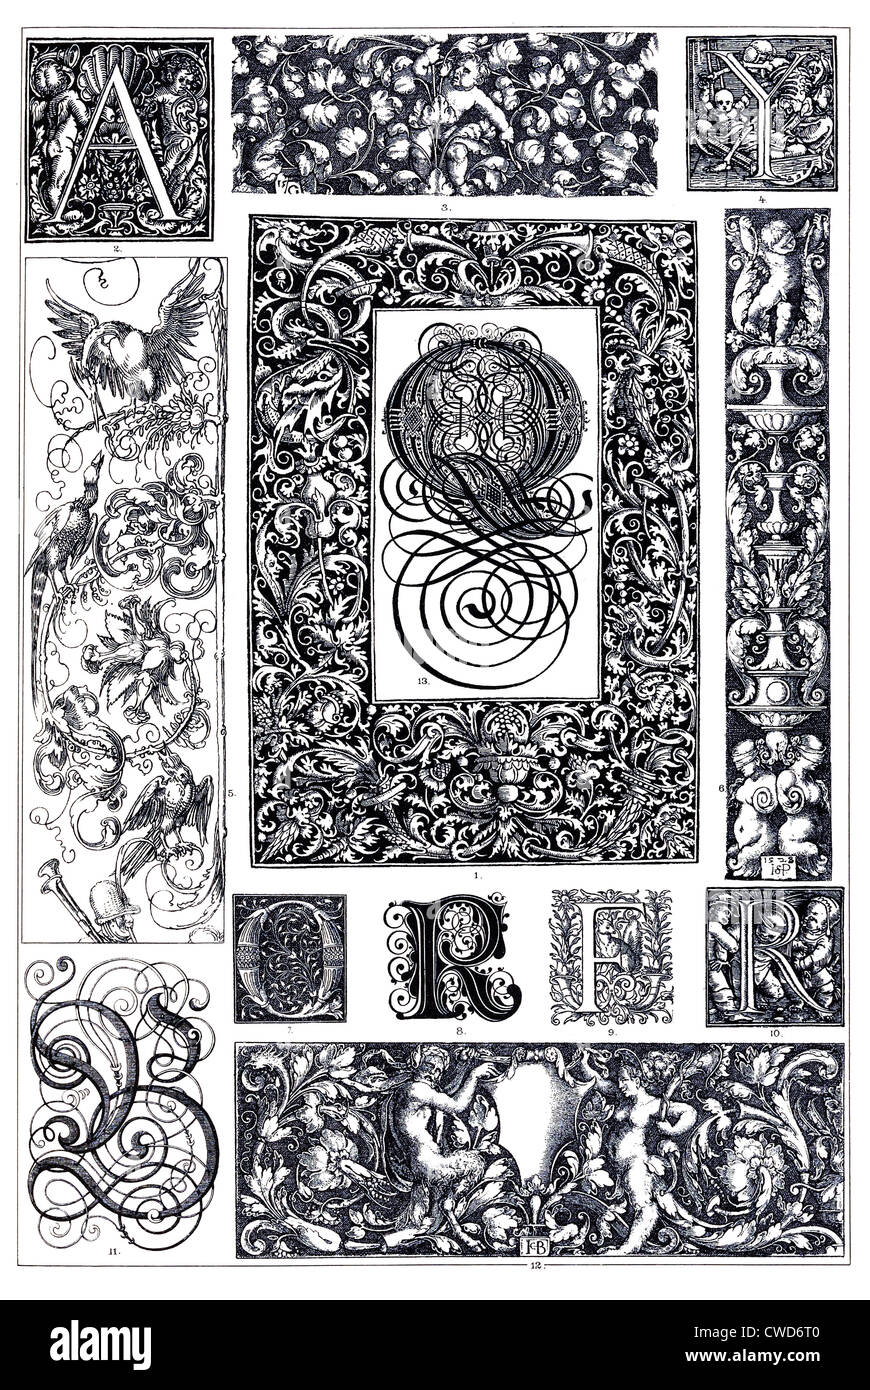 Ornements typographiques allemandes de la Renaissance Banque D'Images